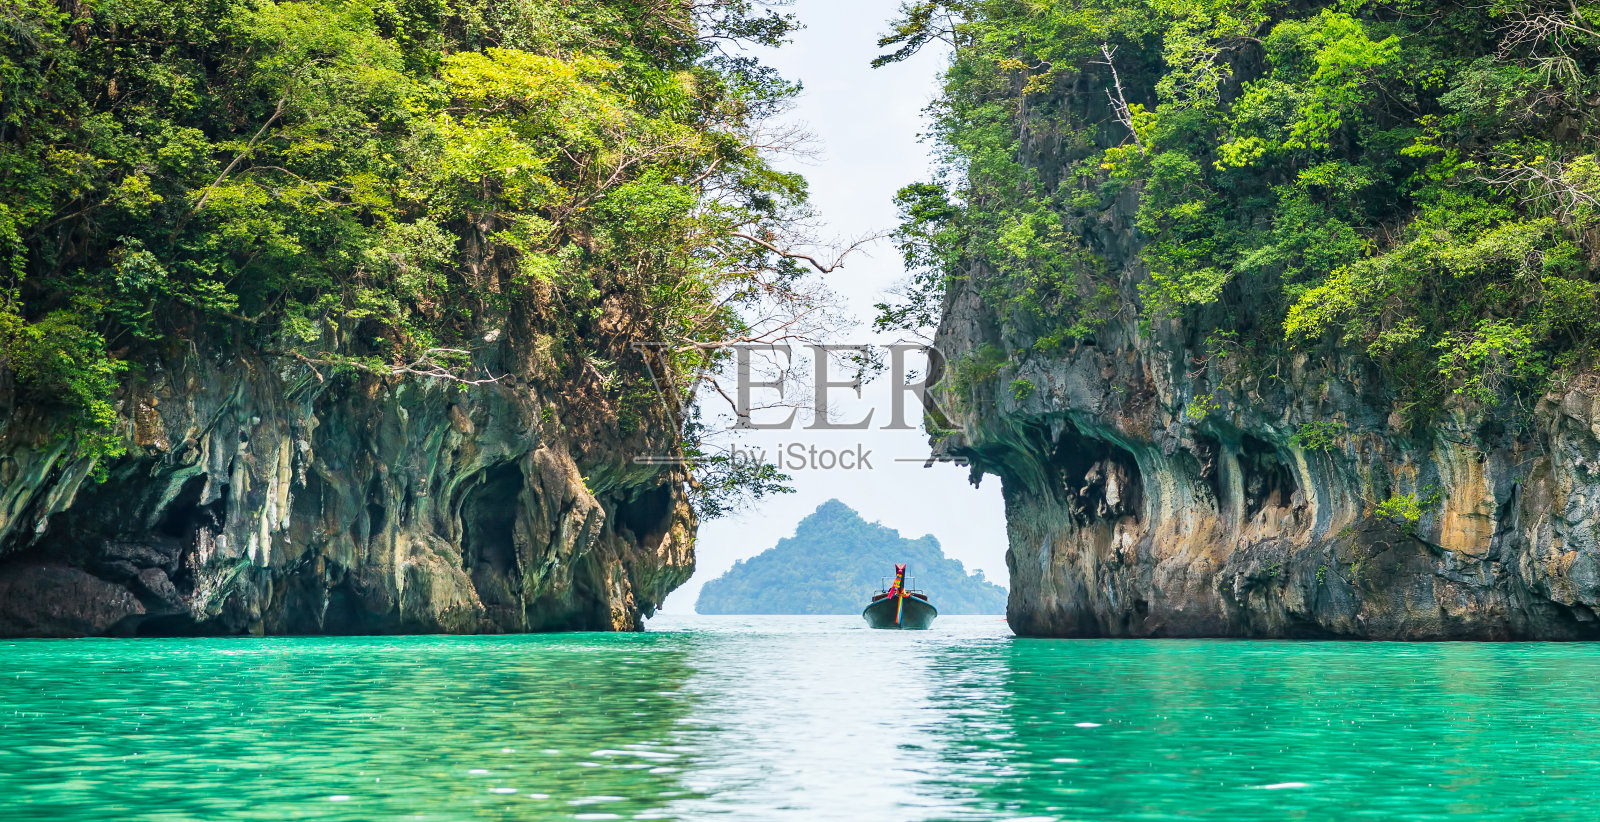 美丽的环礁湖和绿松石水在香港岛惊人的景色。地点:港岛，甲米，泰国，安达曼海。艺术照片。美丽的世界。全景照片摄影图片